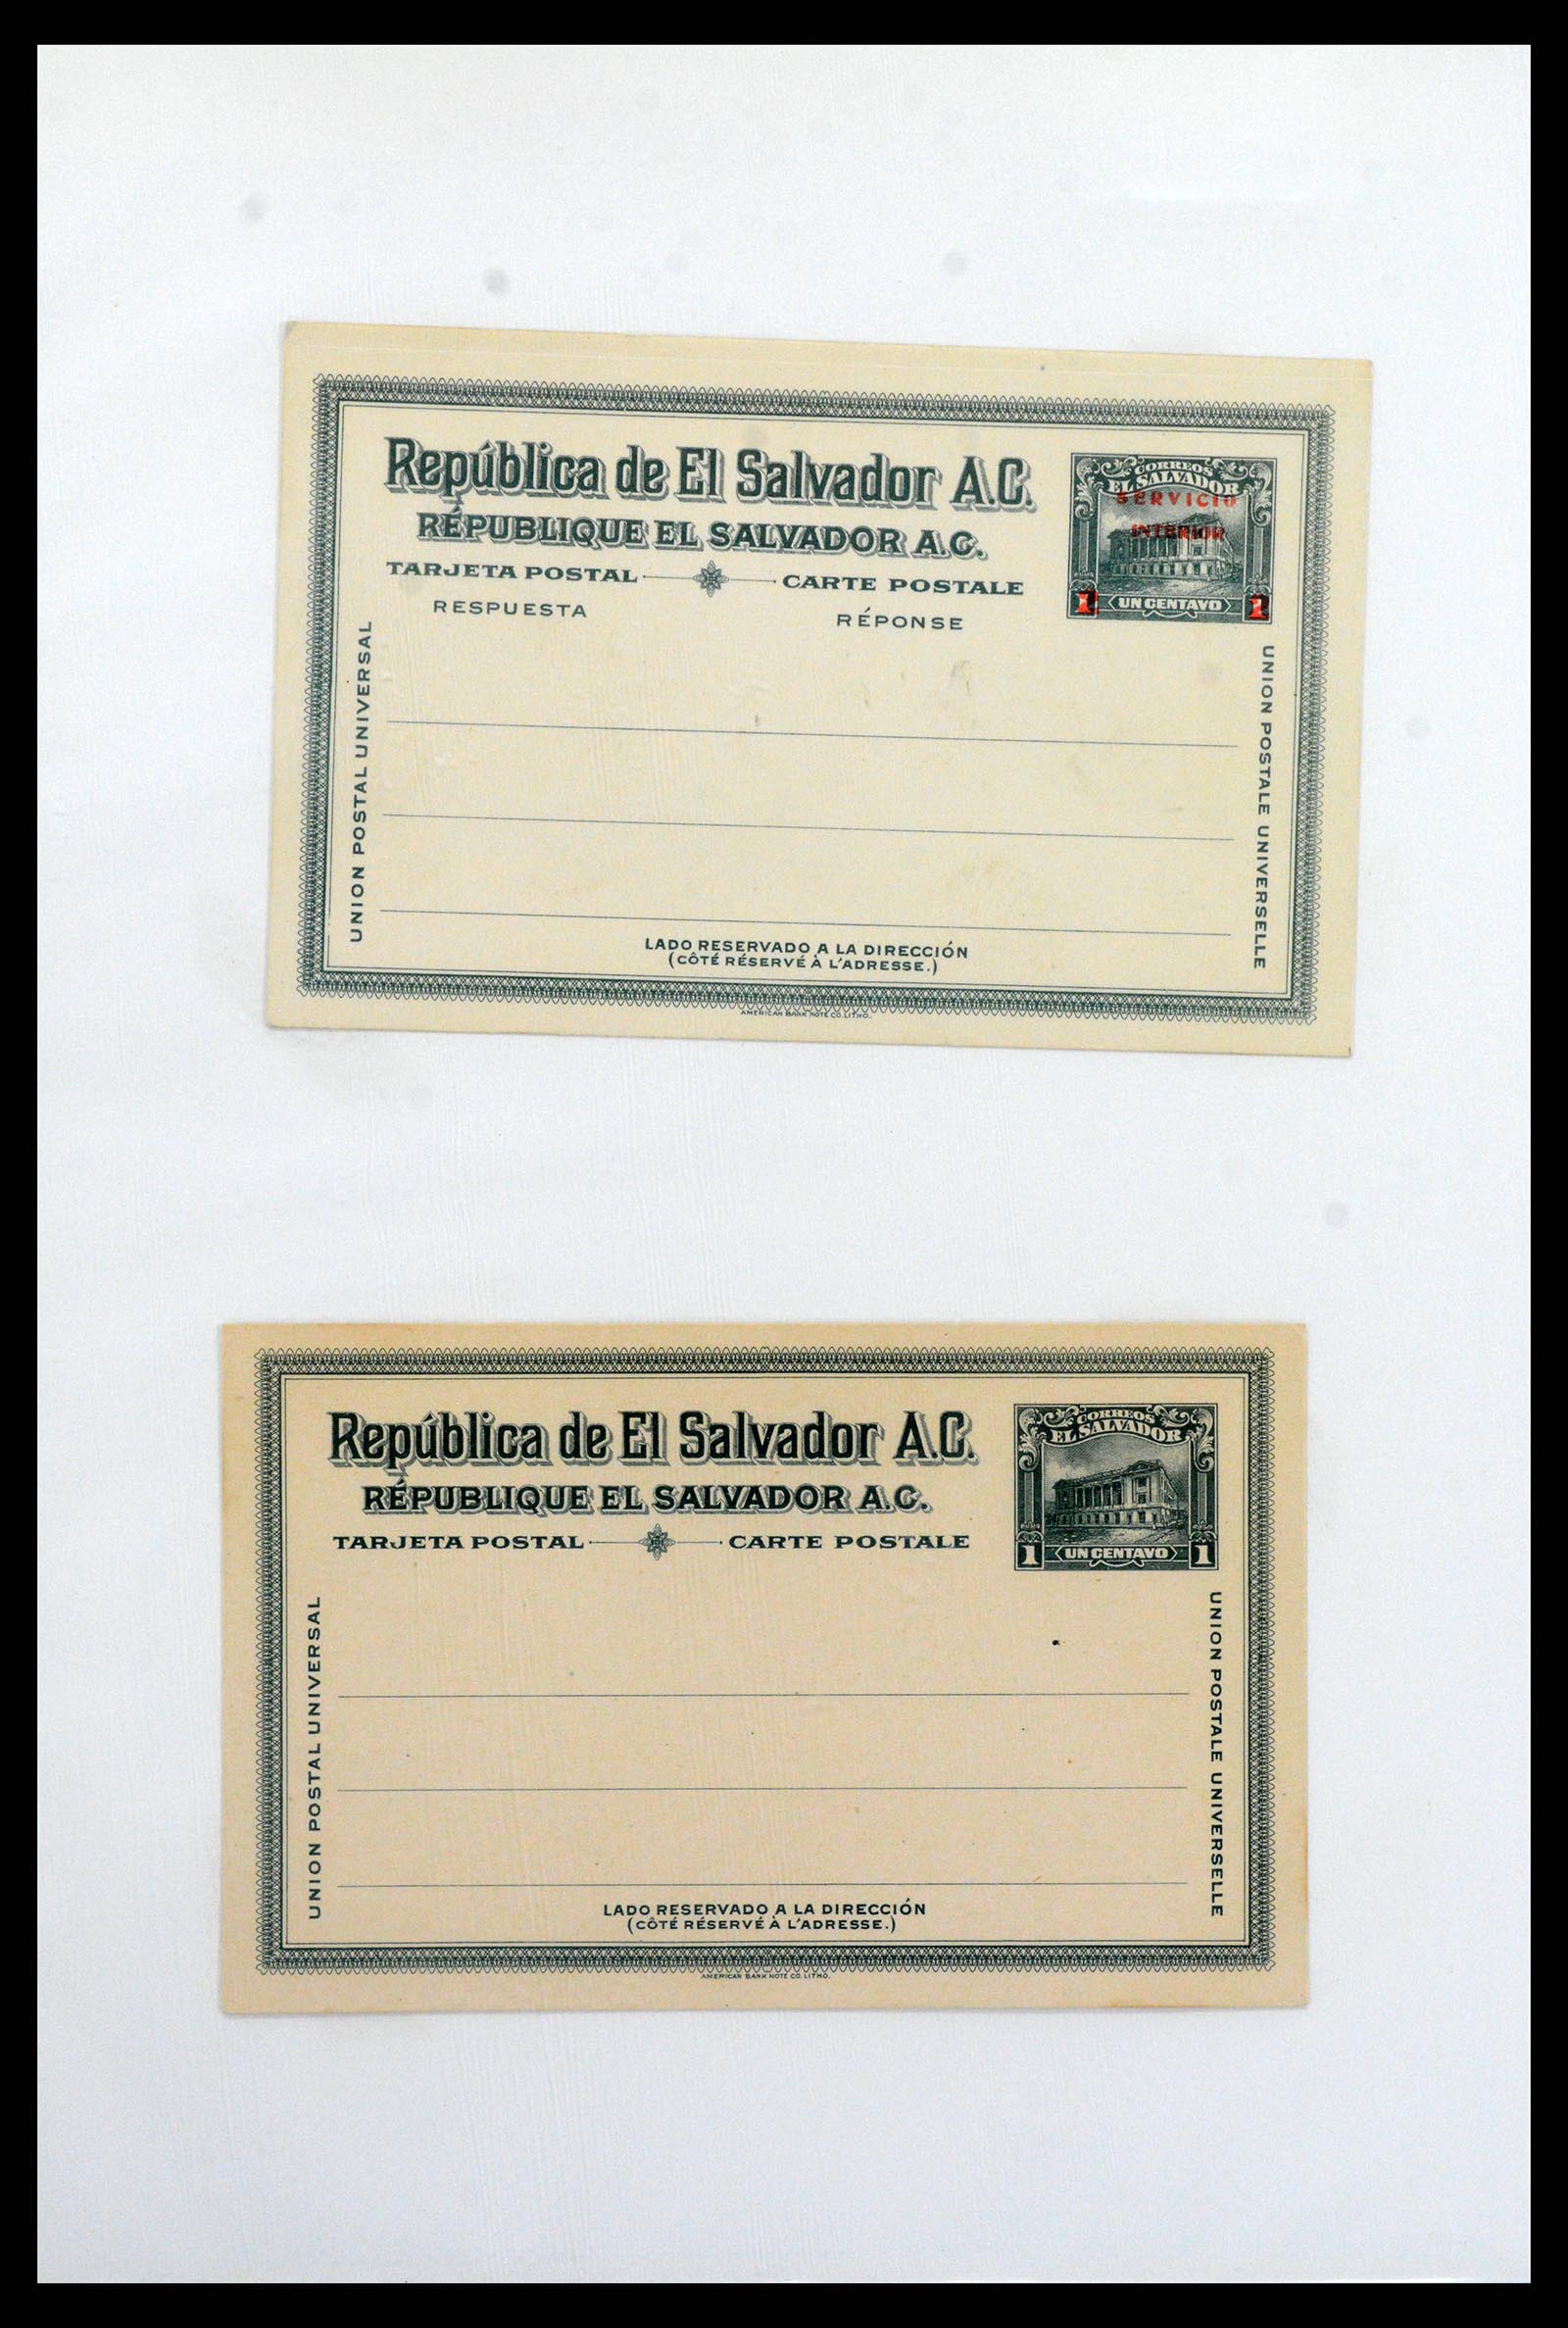 37412 025 - Stamp collection 37412 El Salvador trains 1891-1930.